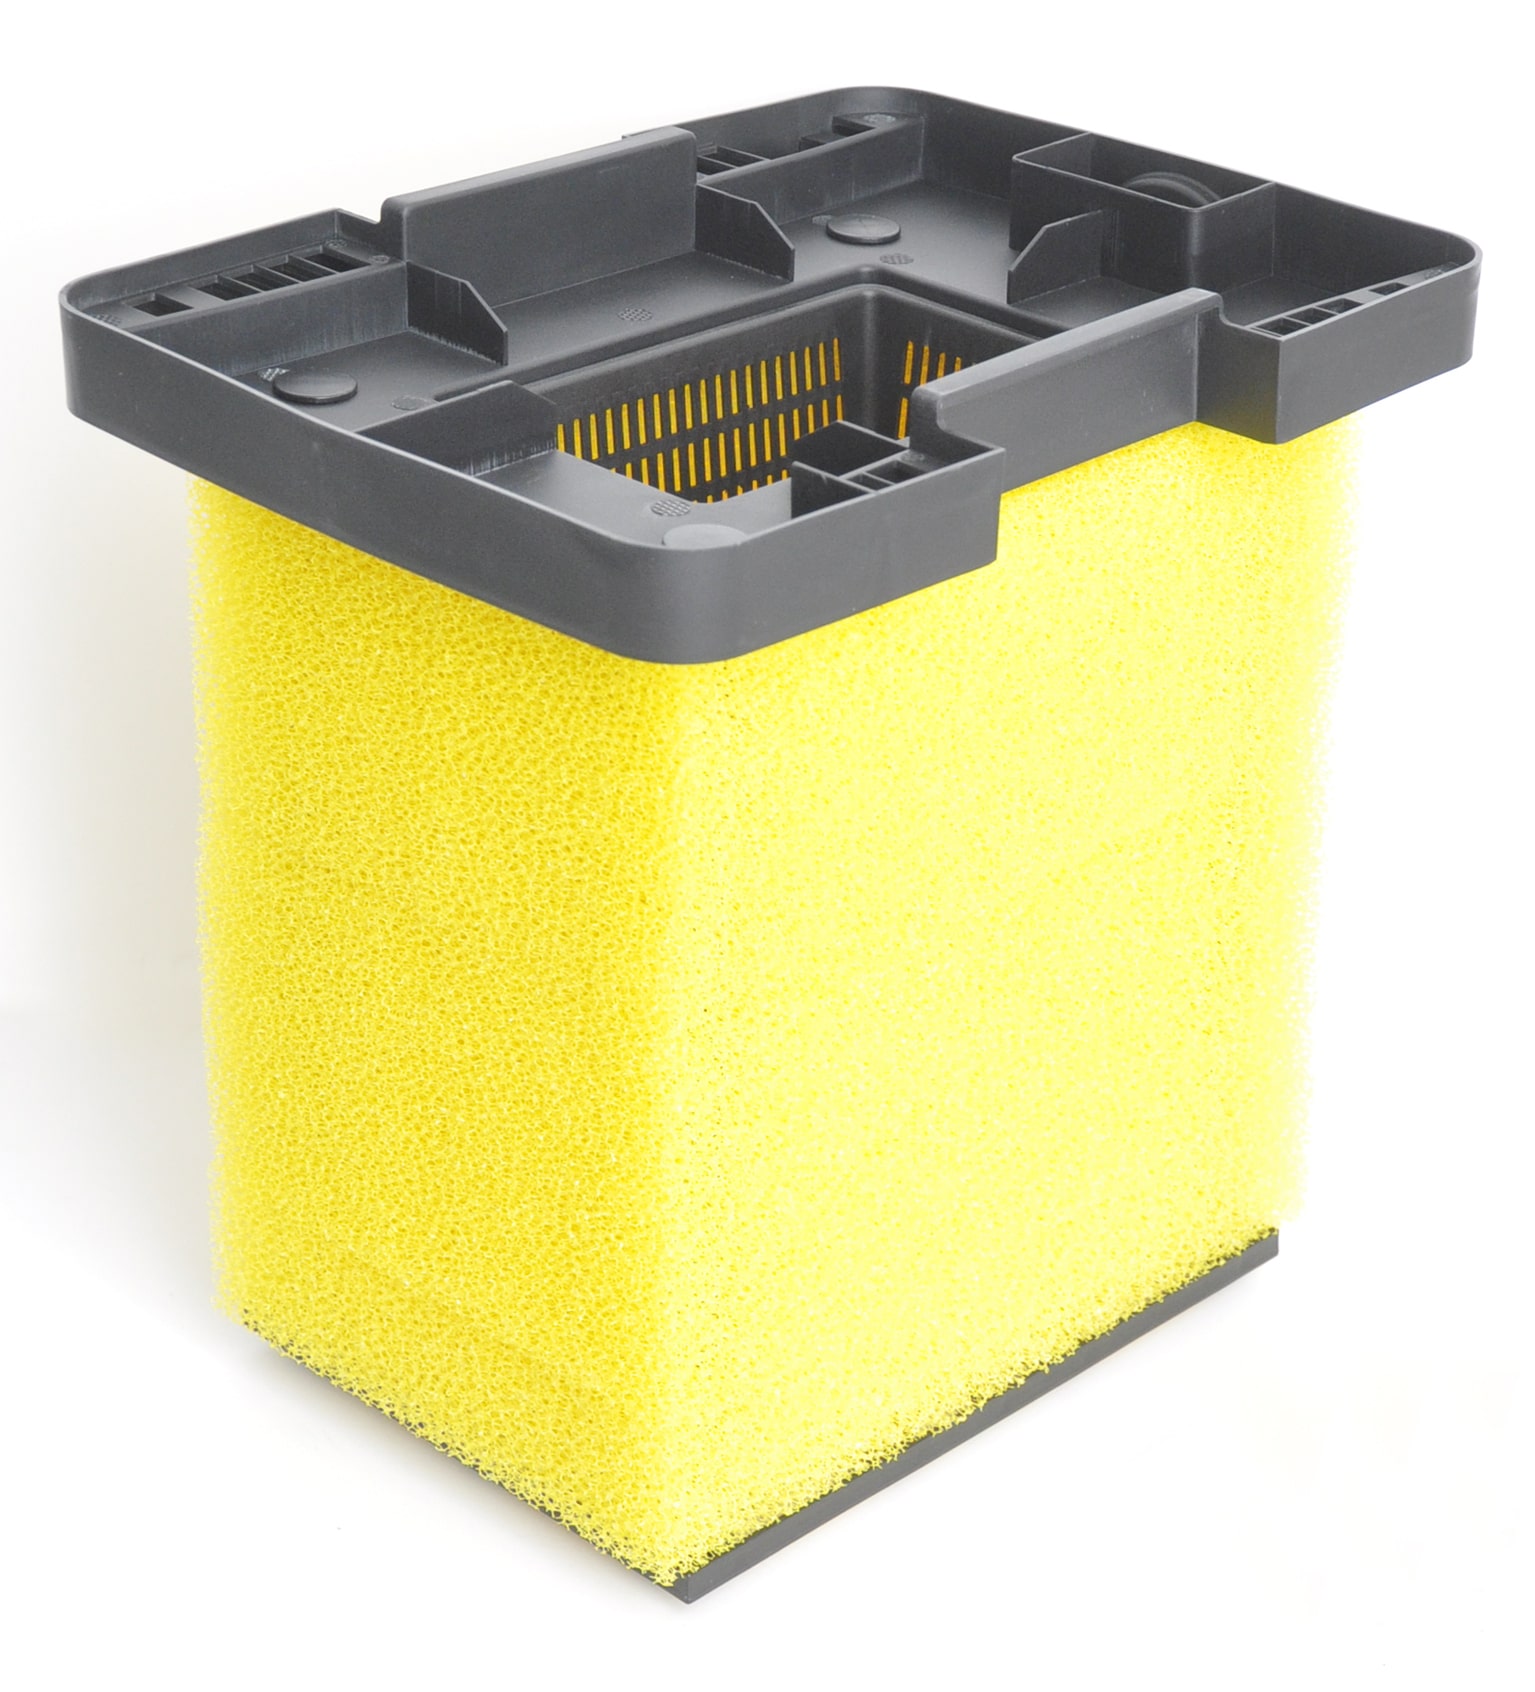 vt-ready-filter-set-6000-kit-de-filtration-multi-chambres-avec-sterilisateur-uv-c-9w-et-pompe-1500-l-h-pour-bassin-jusqu-a-6000-l-4-min (2)